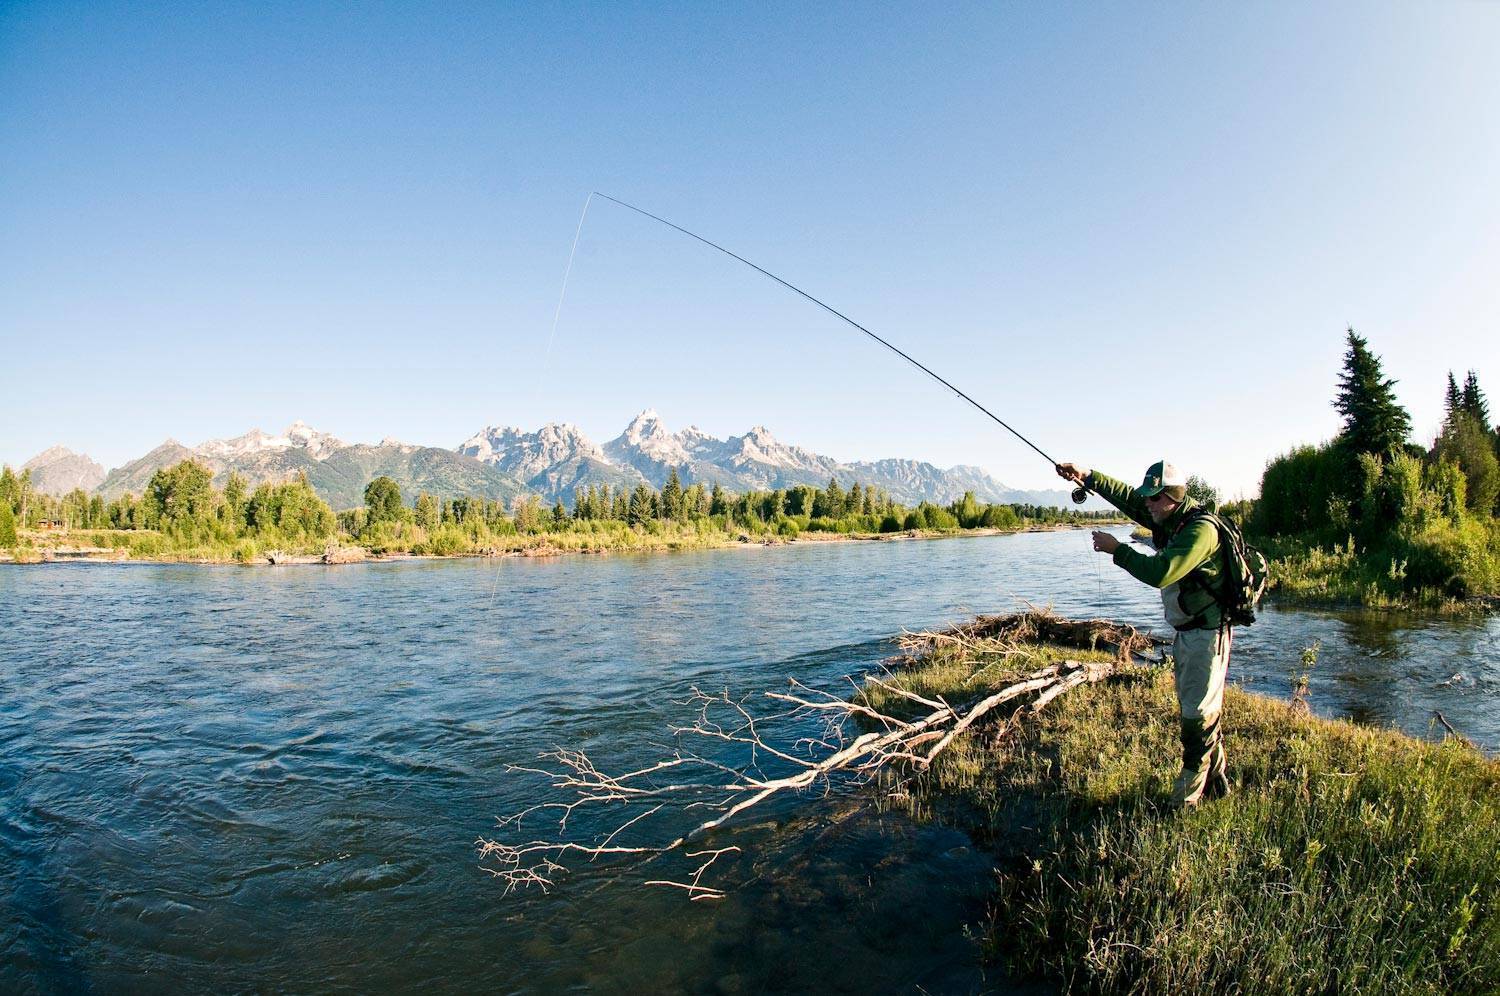 Снасти для ловли лосося и особенности проводки